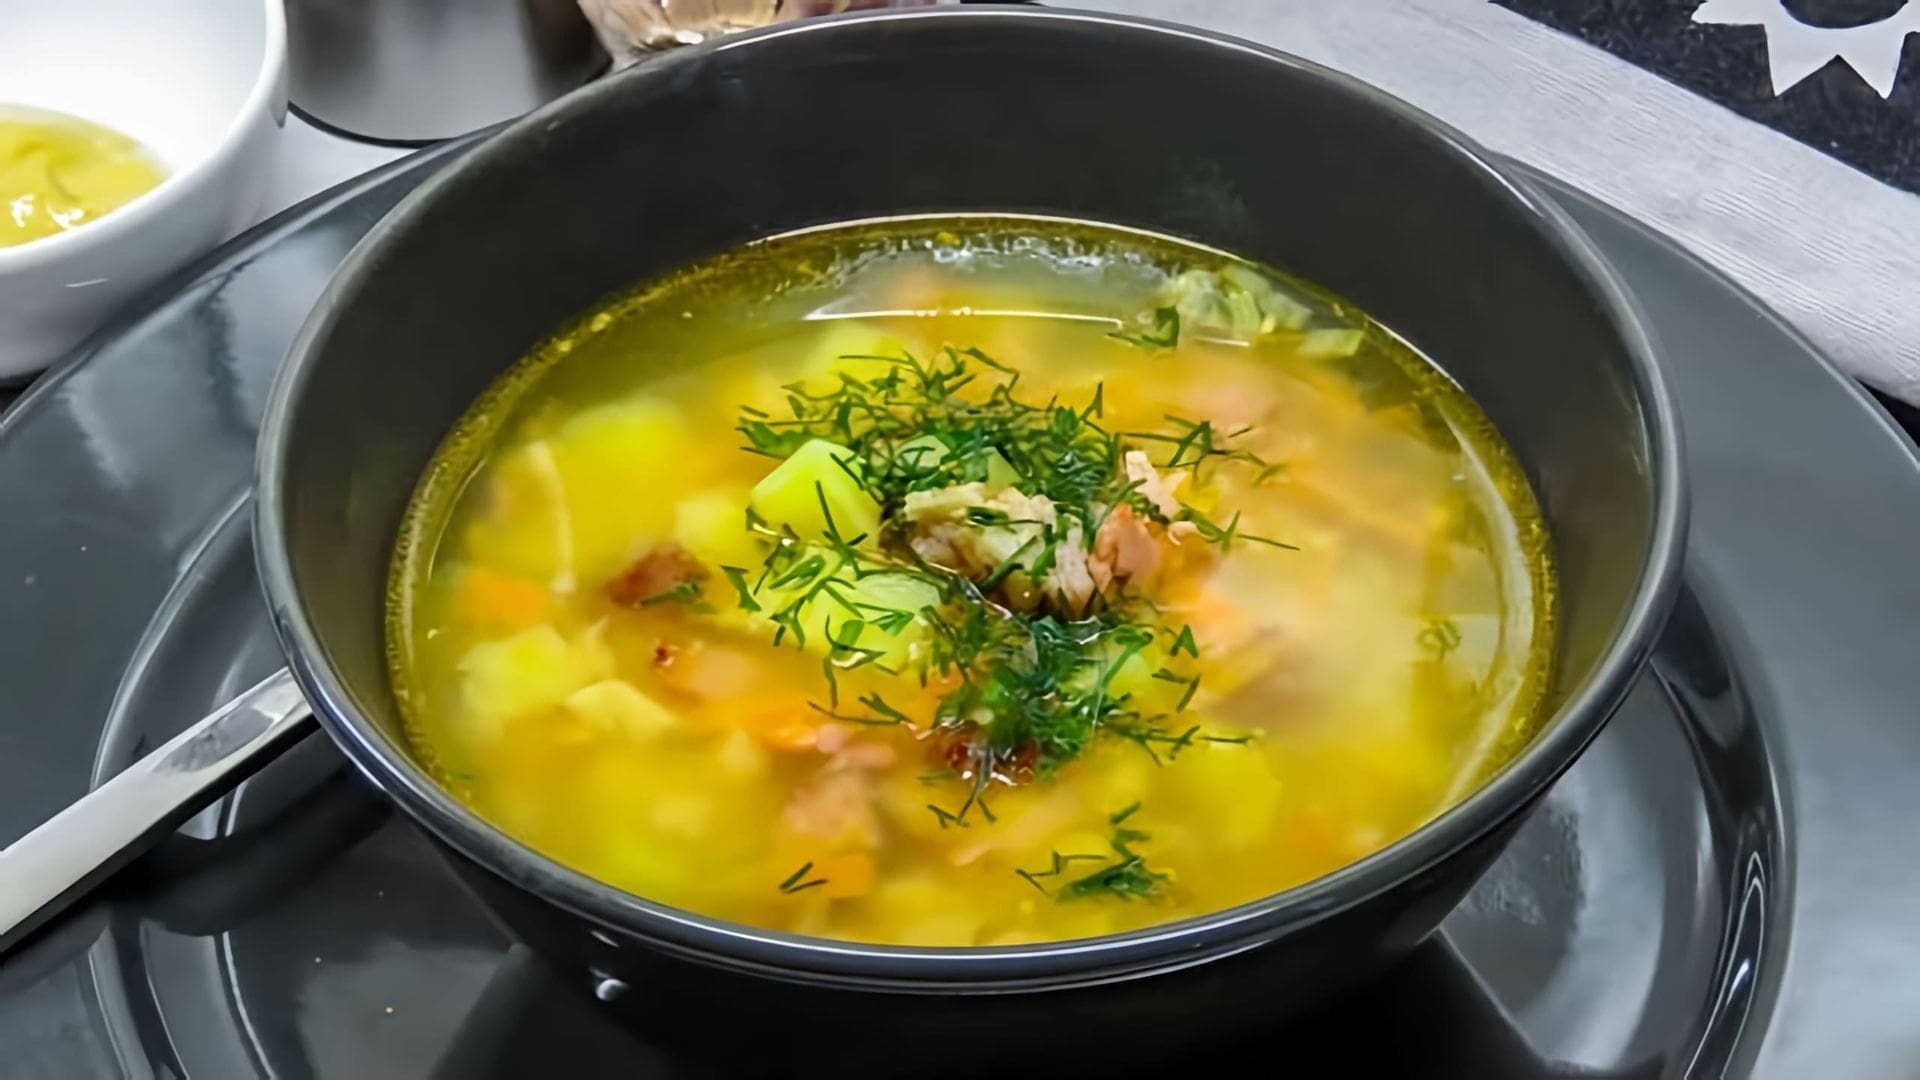 В этом видео демонстрируется рецепт приготовления горохового супа, который напоминает вкус детства